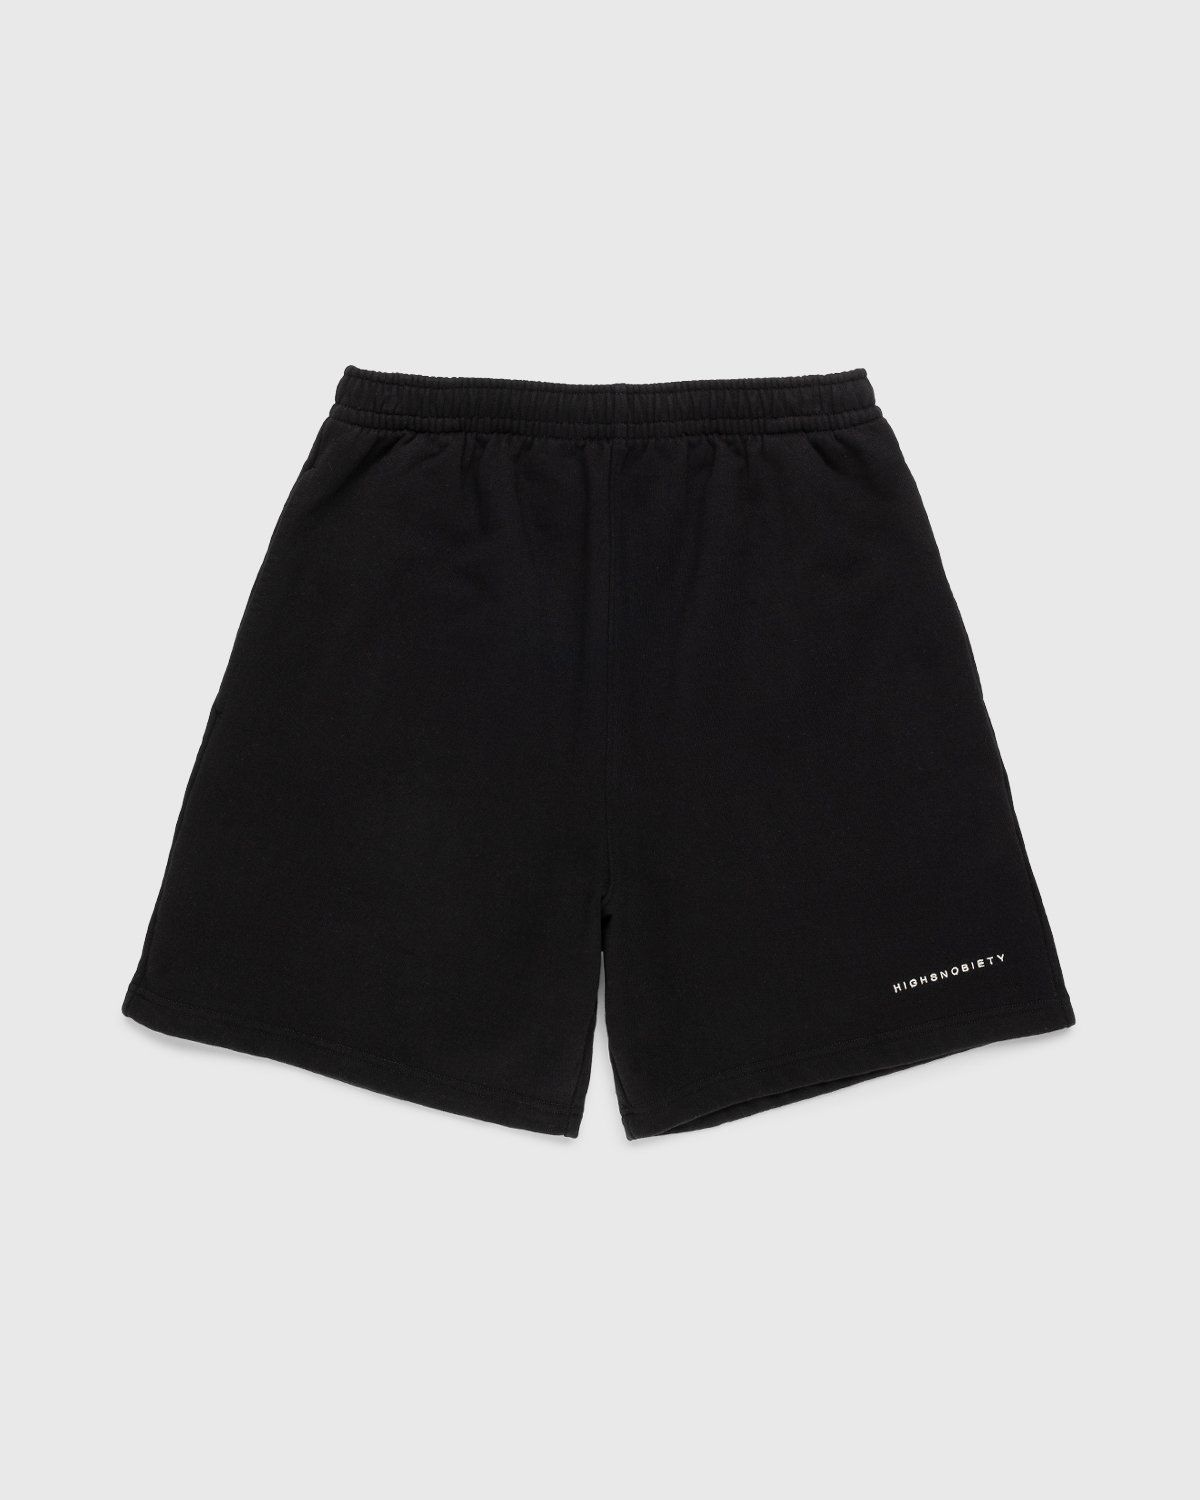 Highsnobiety – Staples Shorts Black - Image 1